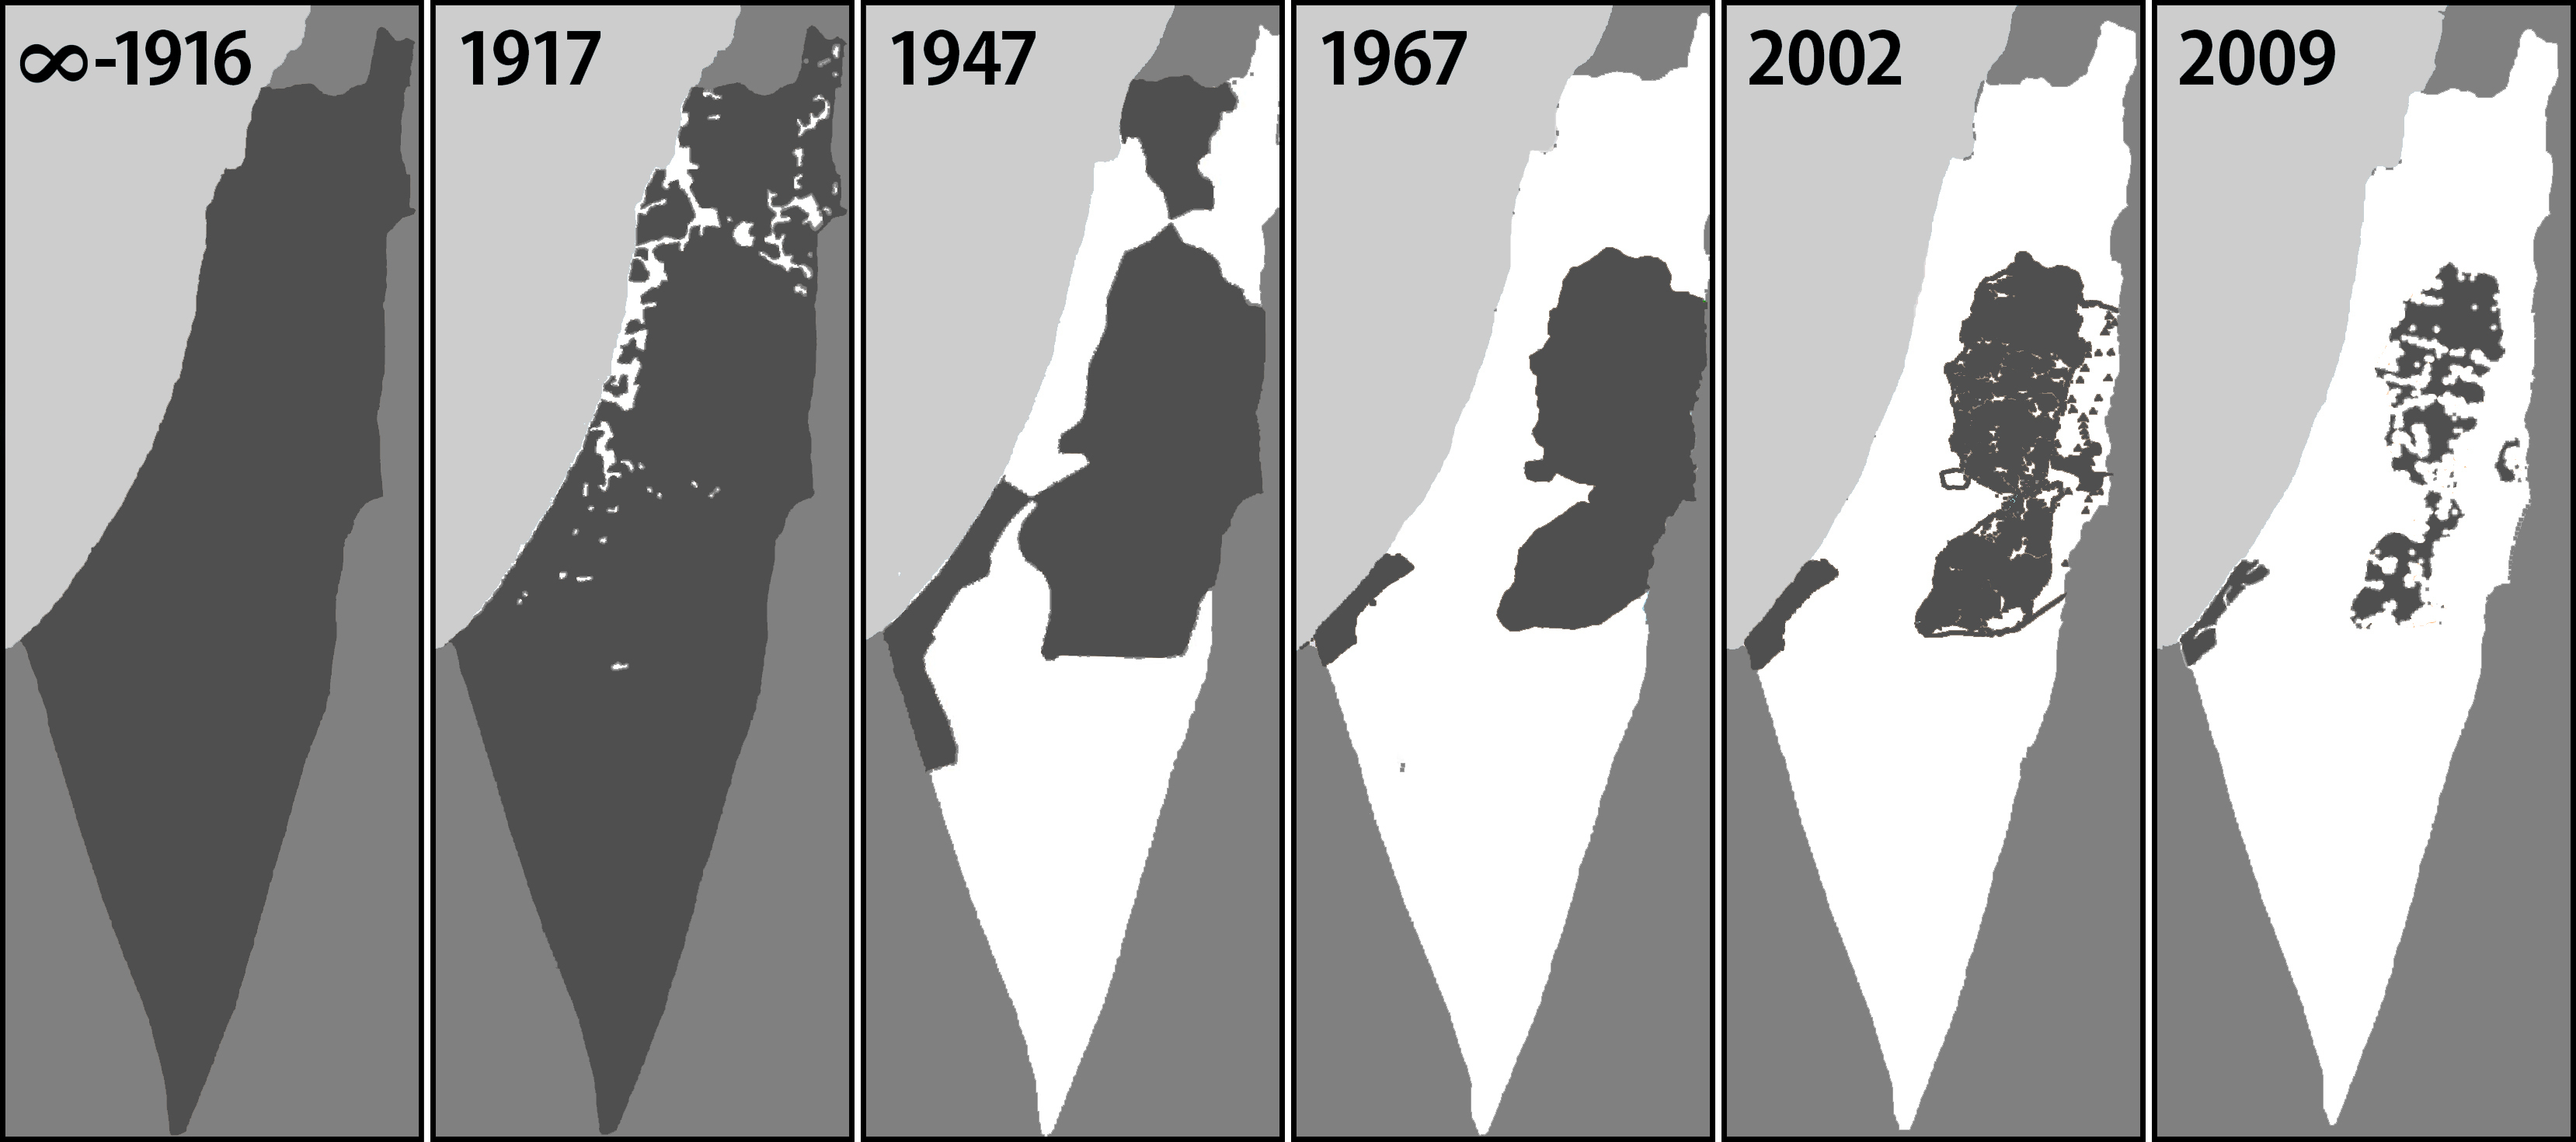 mapa-palestina